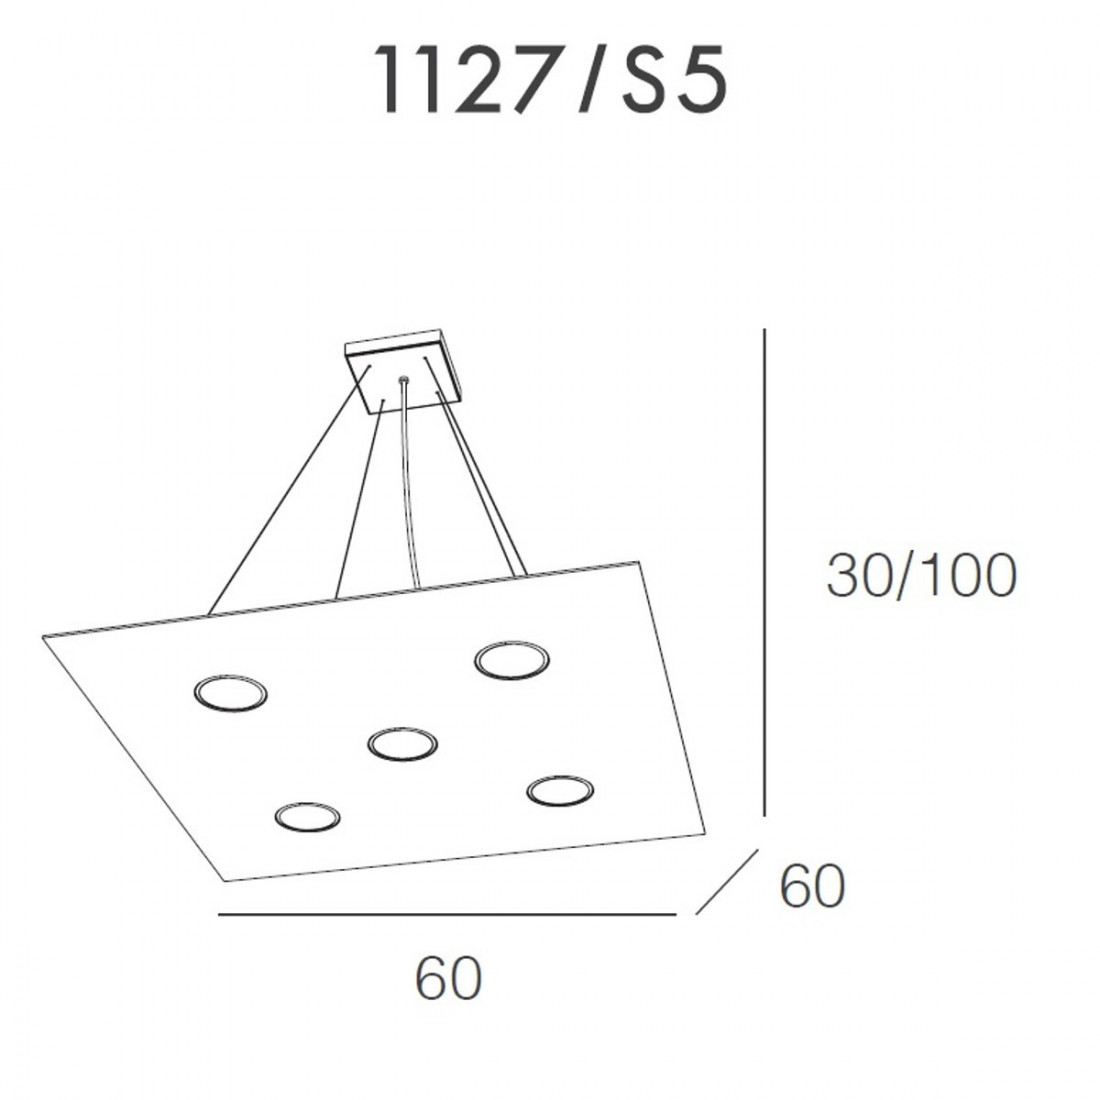 Lustre TP-AREA 1127 S5 + 2 63W Gx53 Led 60x60 suspension carrée moderne en métal blanc bi-émission